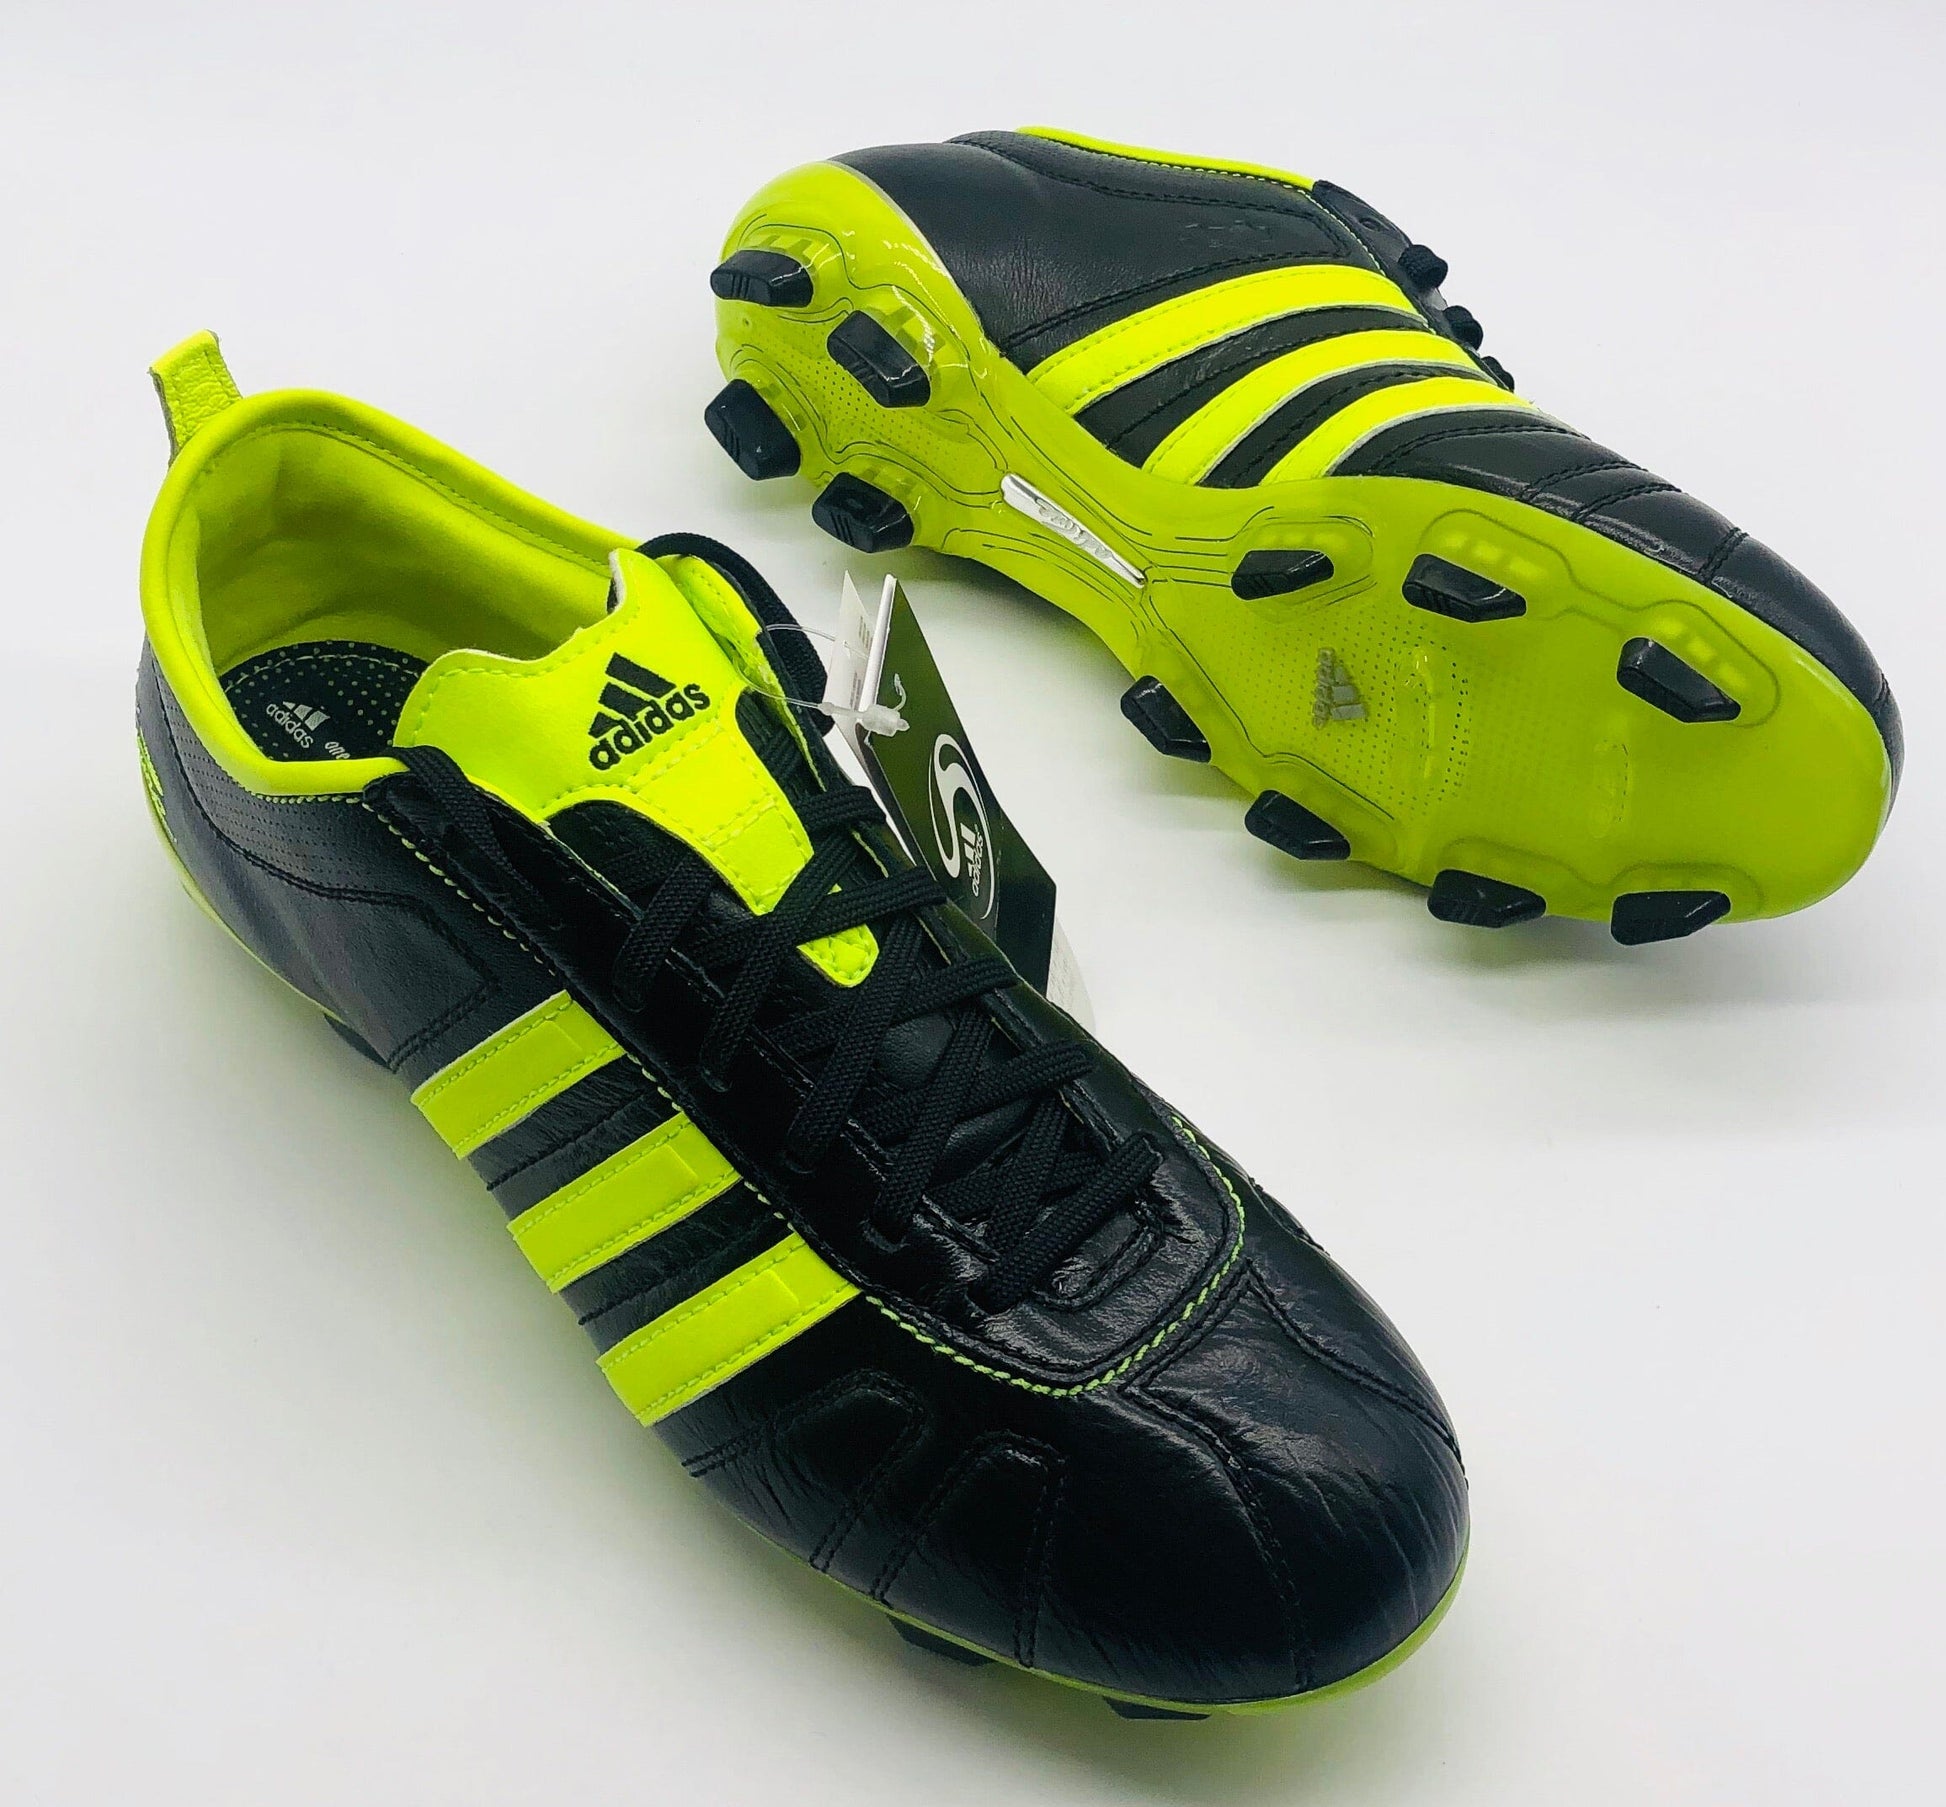 Buy Adidas Adipure IV FG at Football Boots